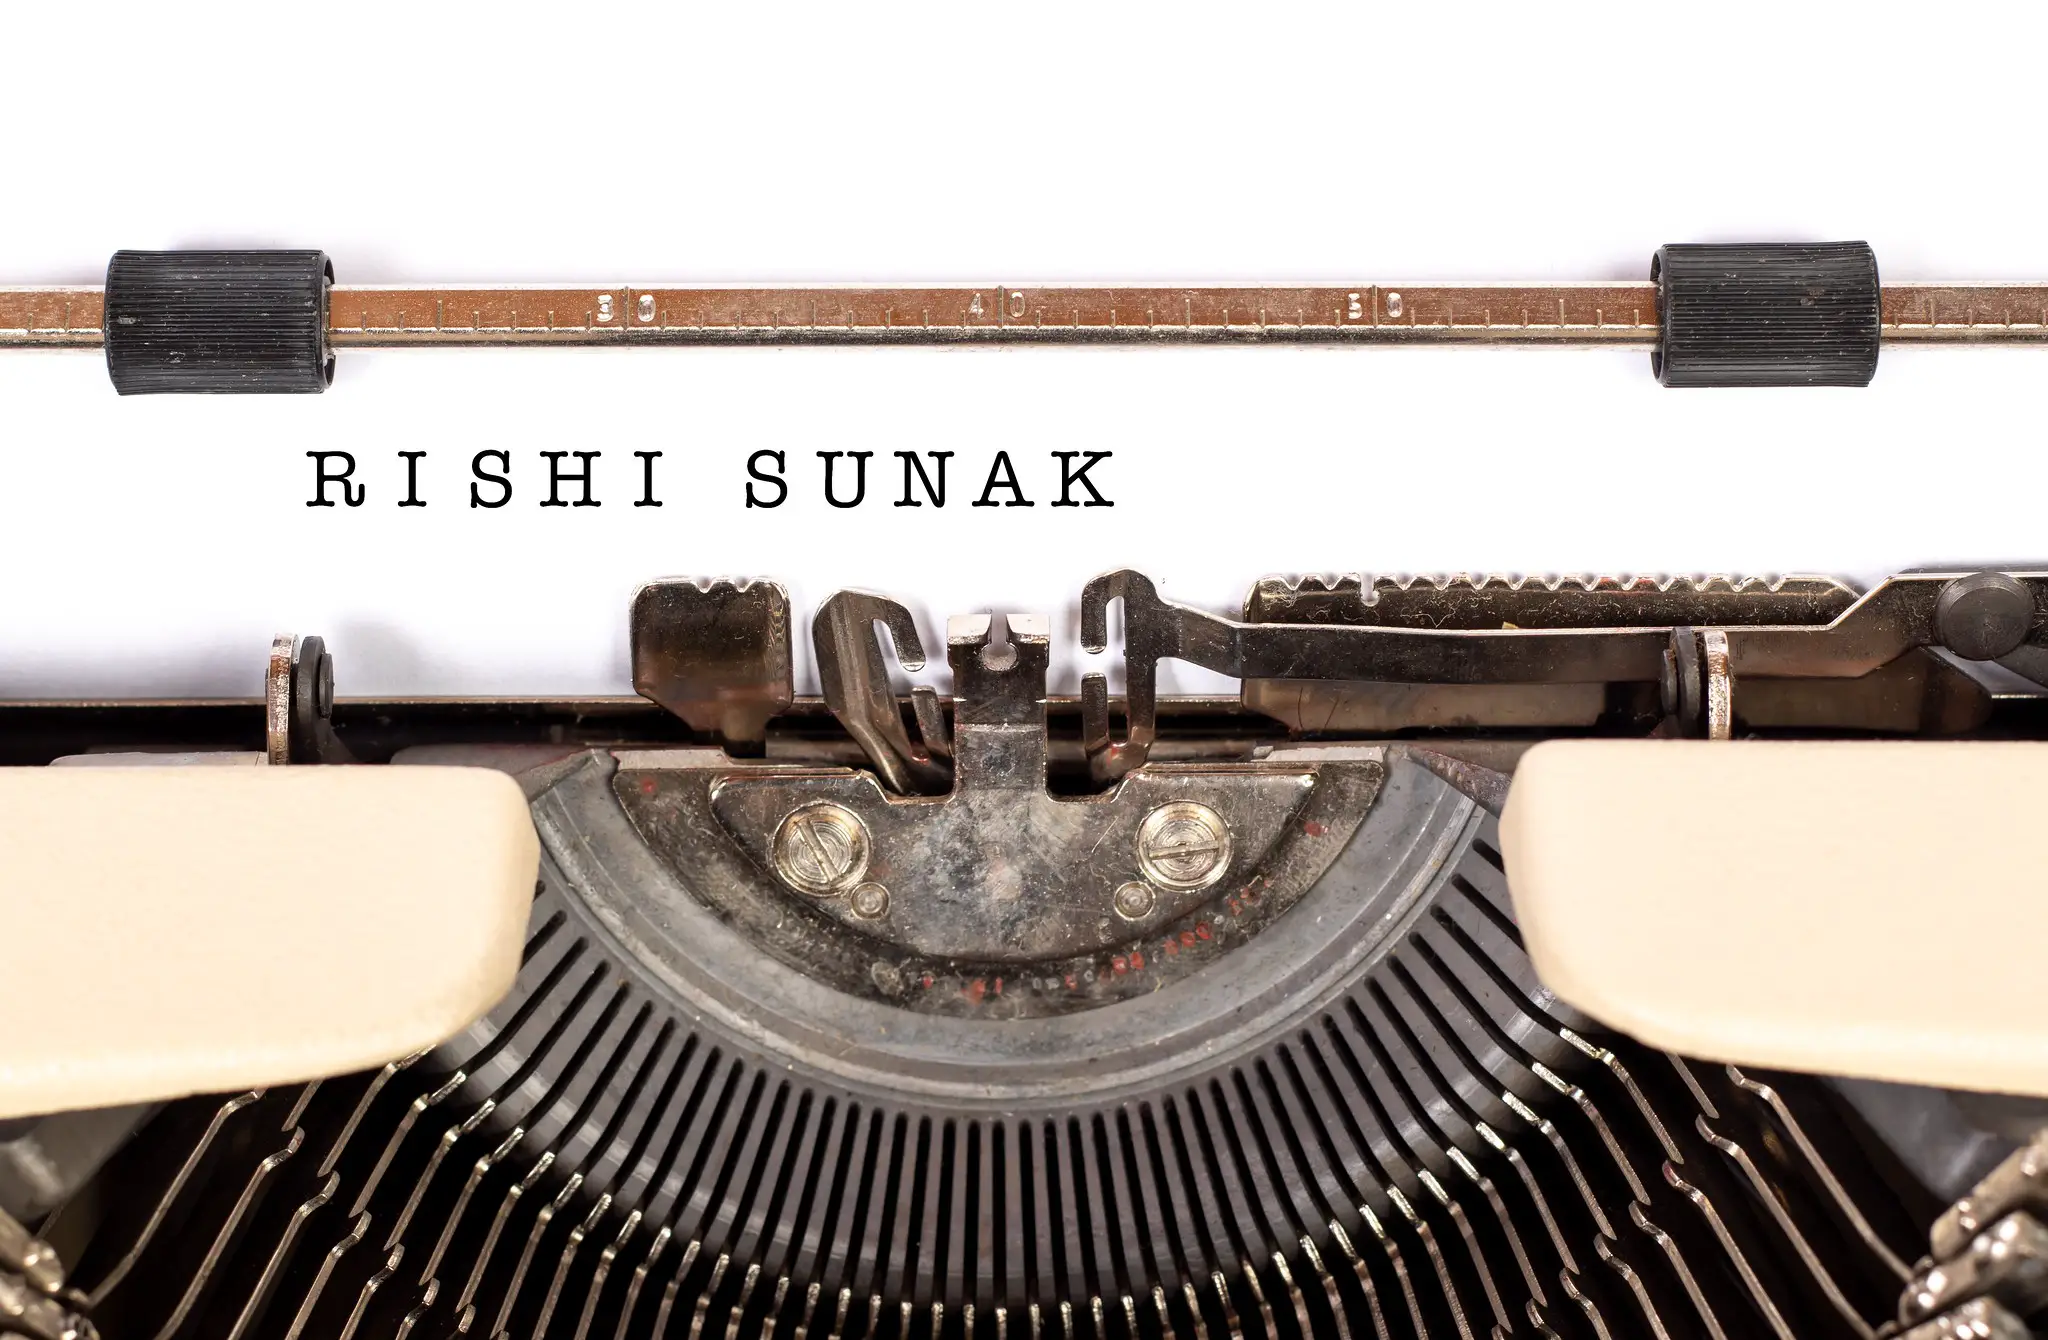 rishi sunak on typewriter